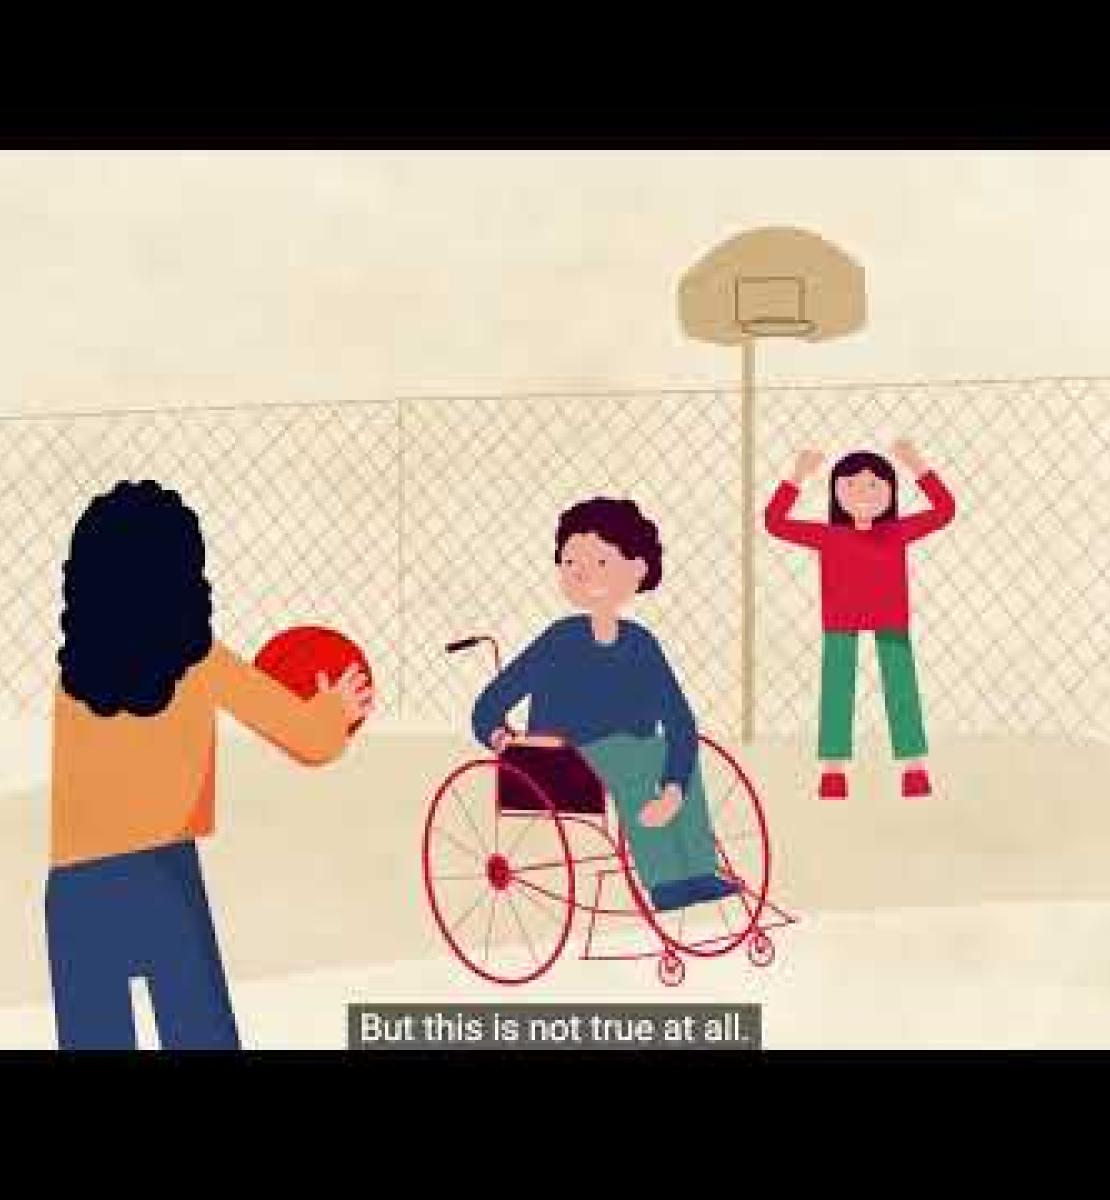 Реальные истории реальных людей: проект ООН по расширению возможностей для людей с инвалидностью в Грузии